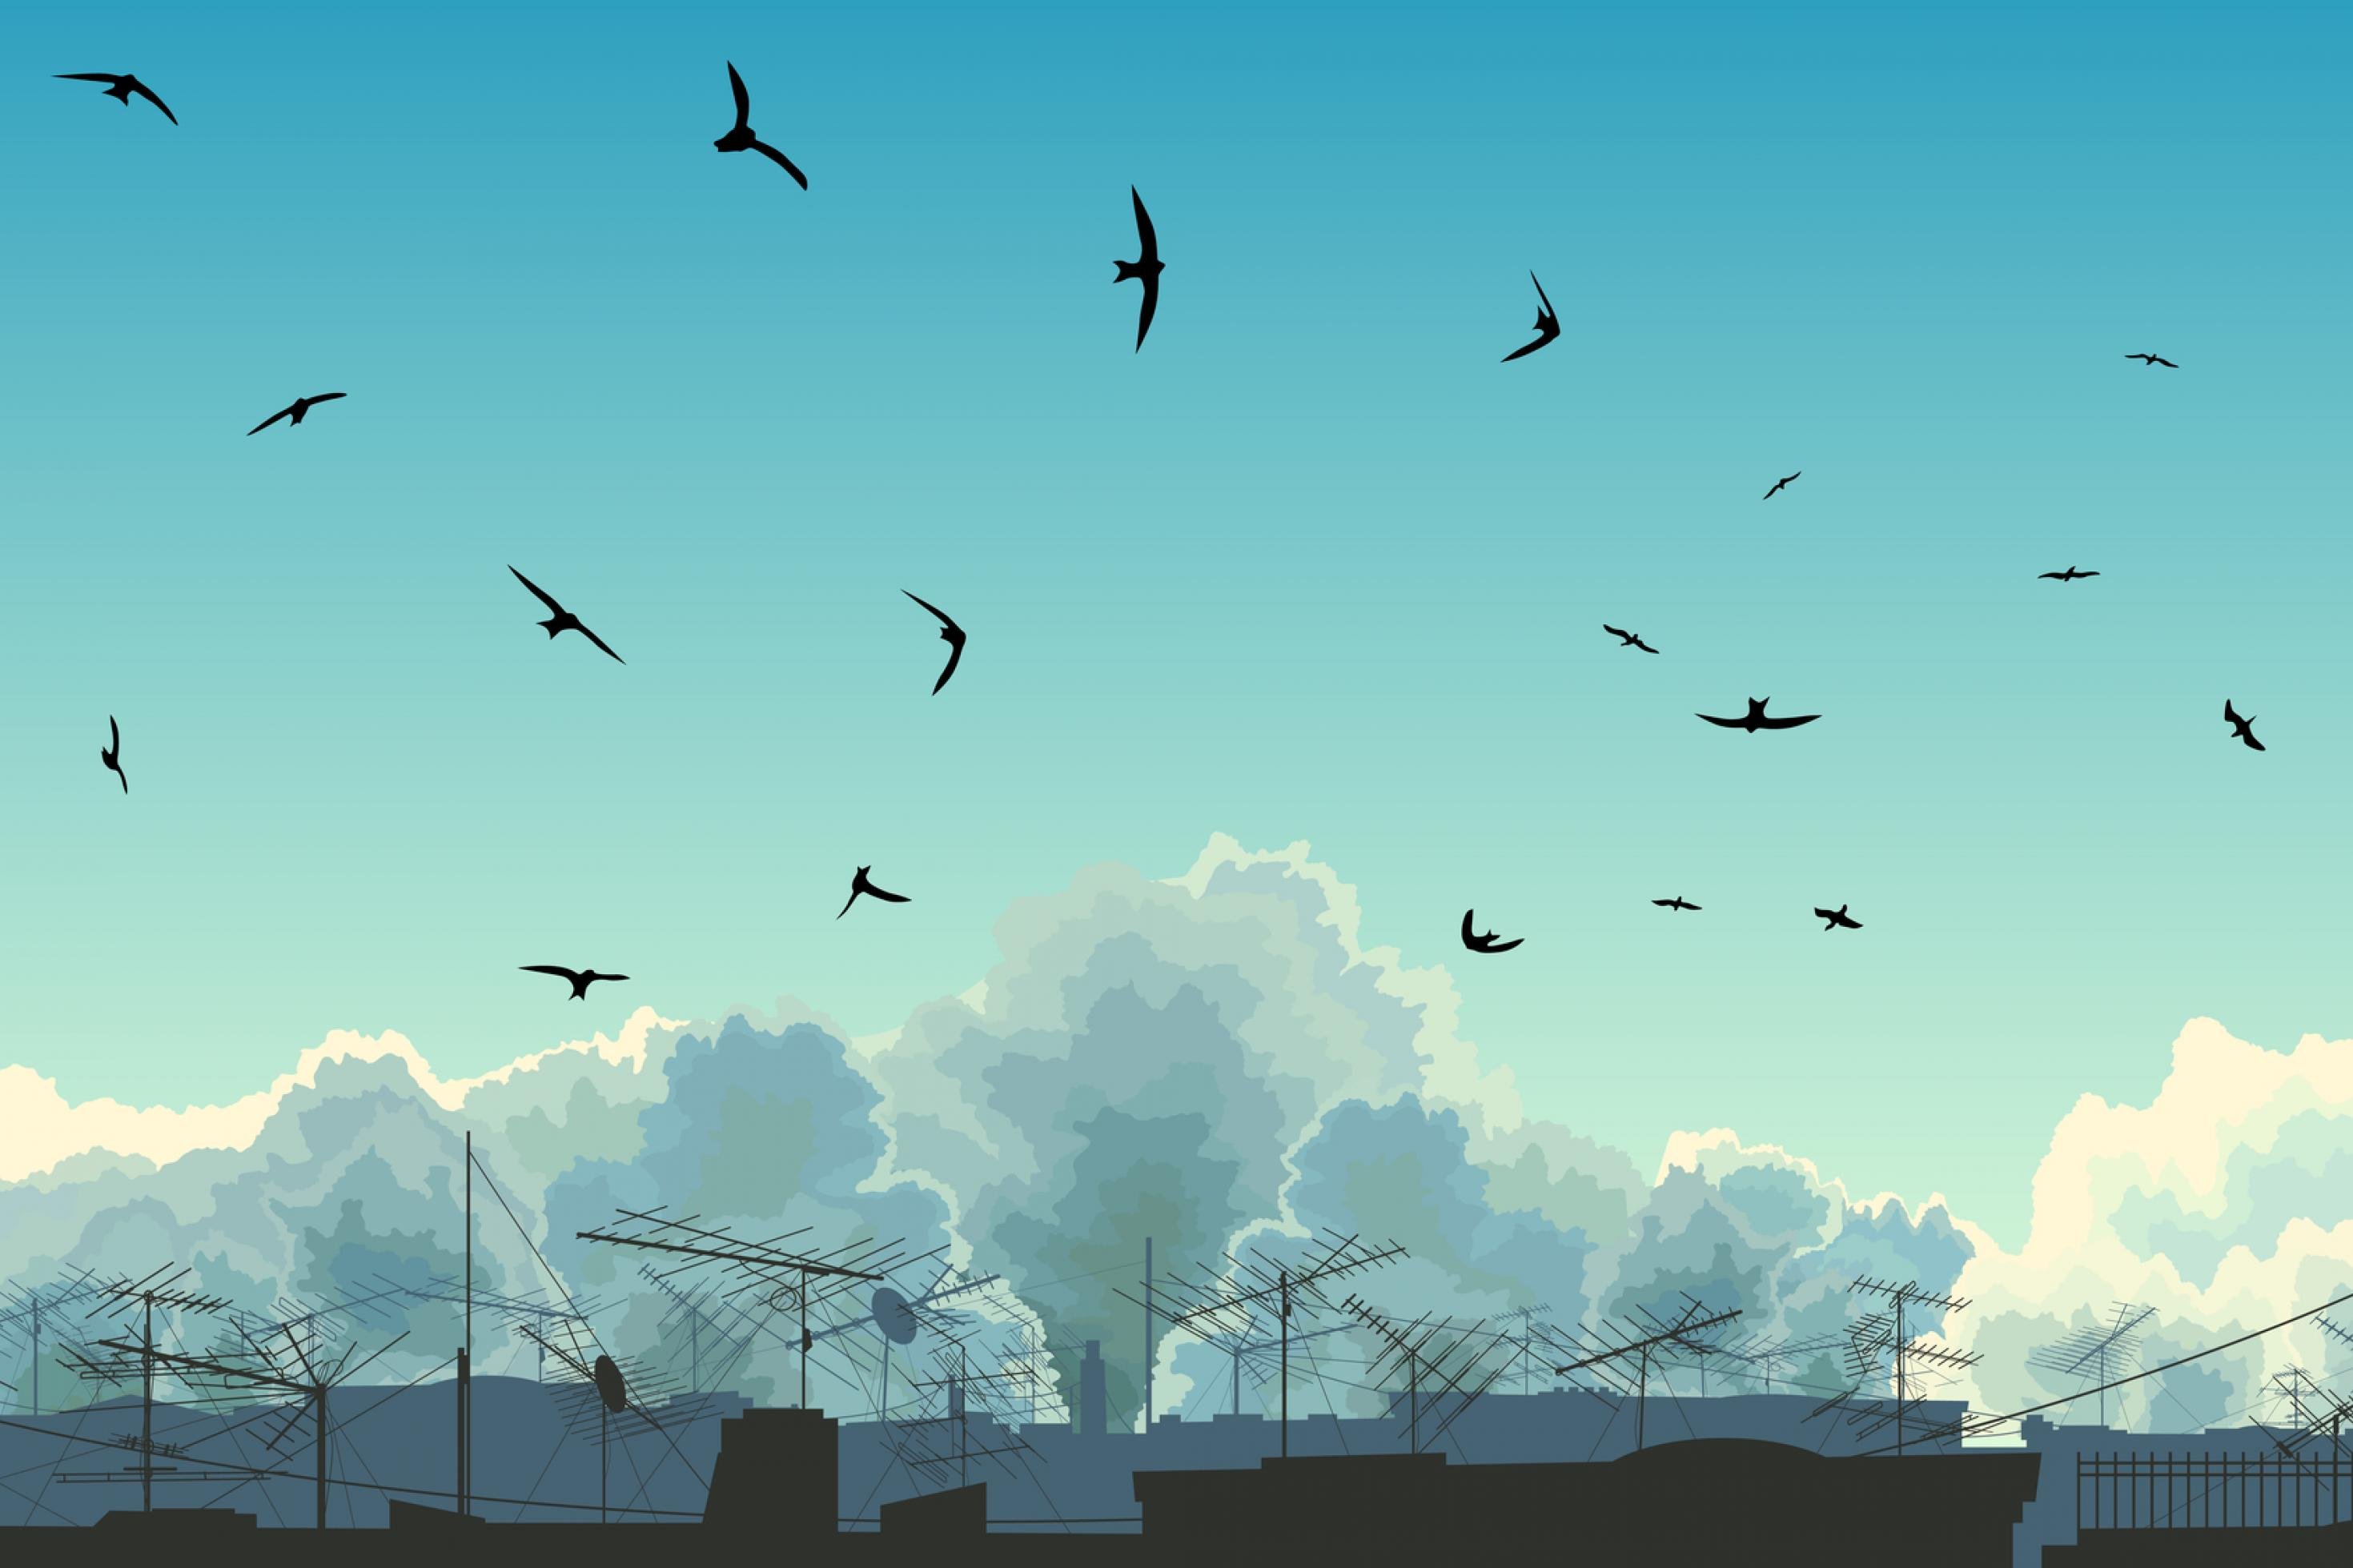 Illustration eines Himmel an dem Vögel fliegen. Am unteren Bildrand sieht man die Antennen von Häuserdächern.